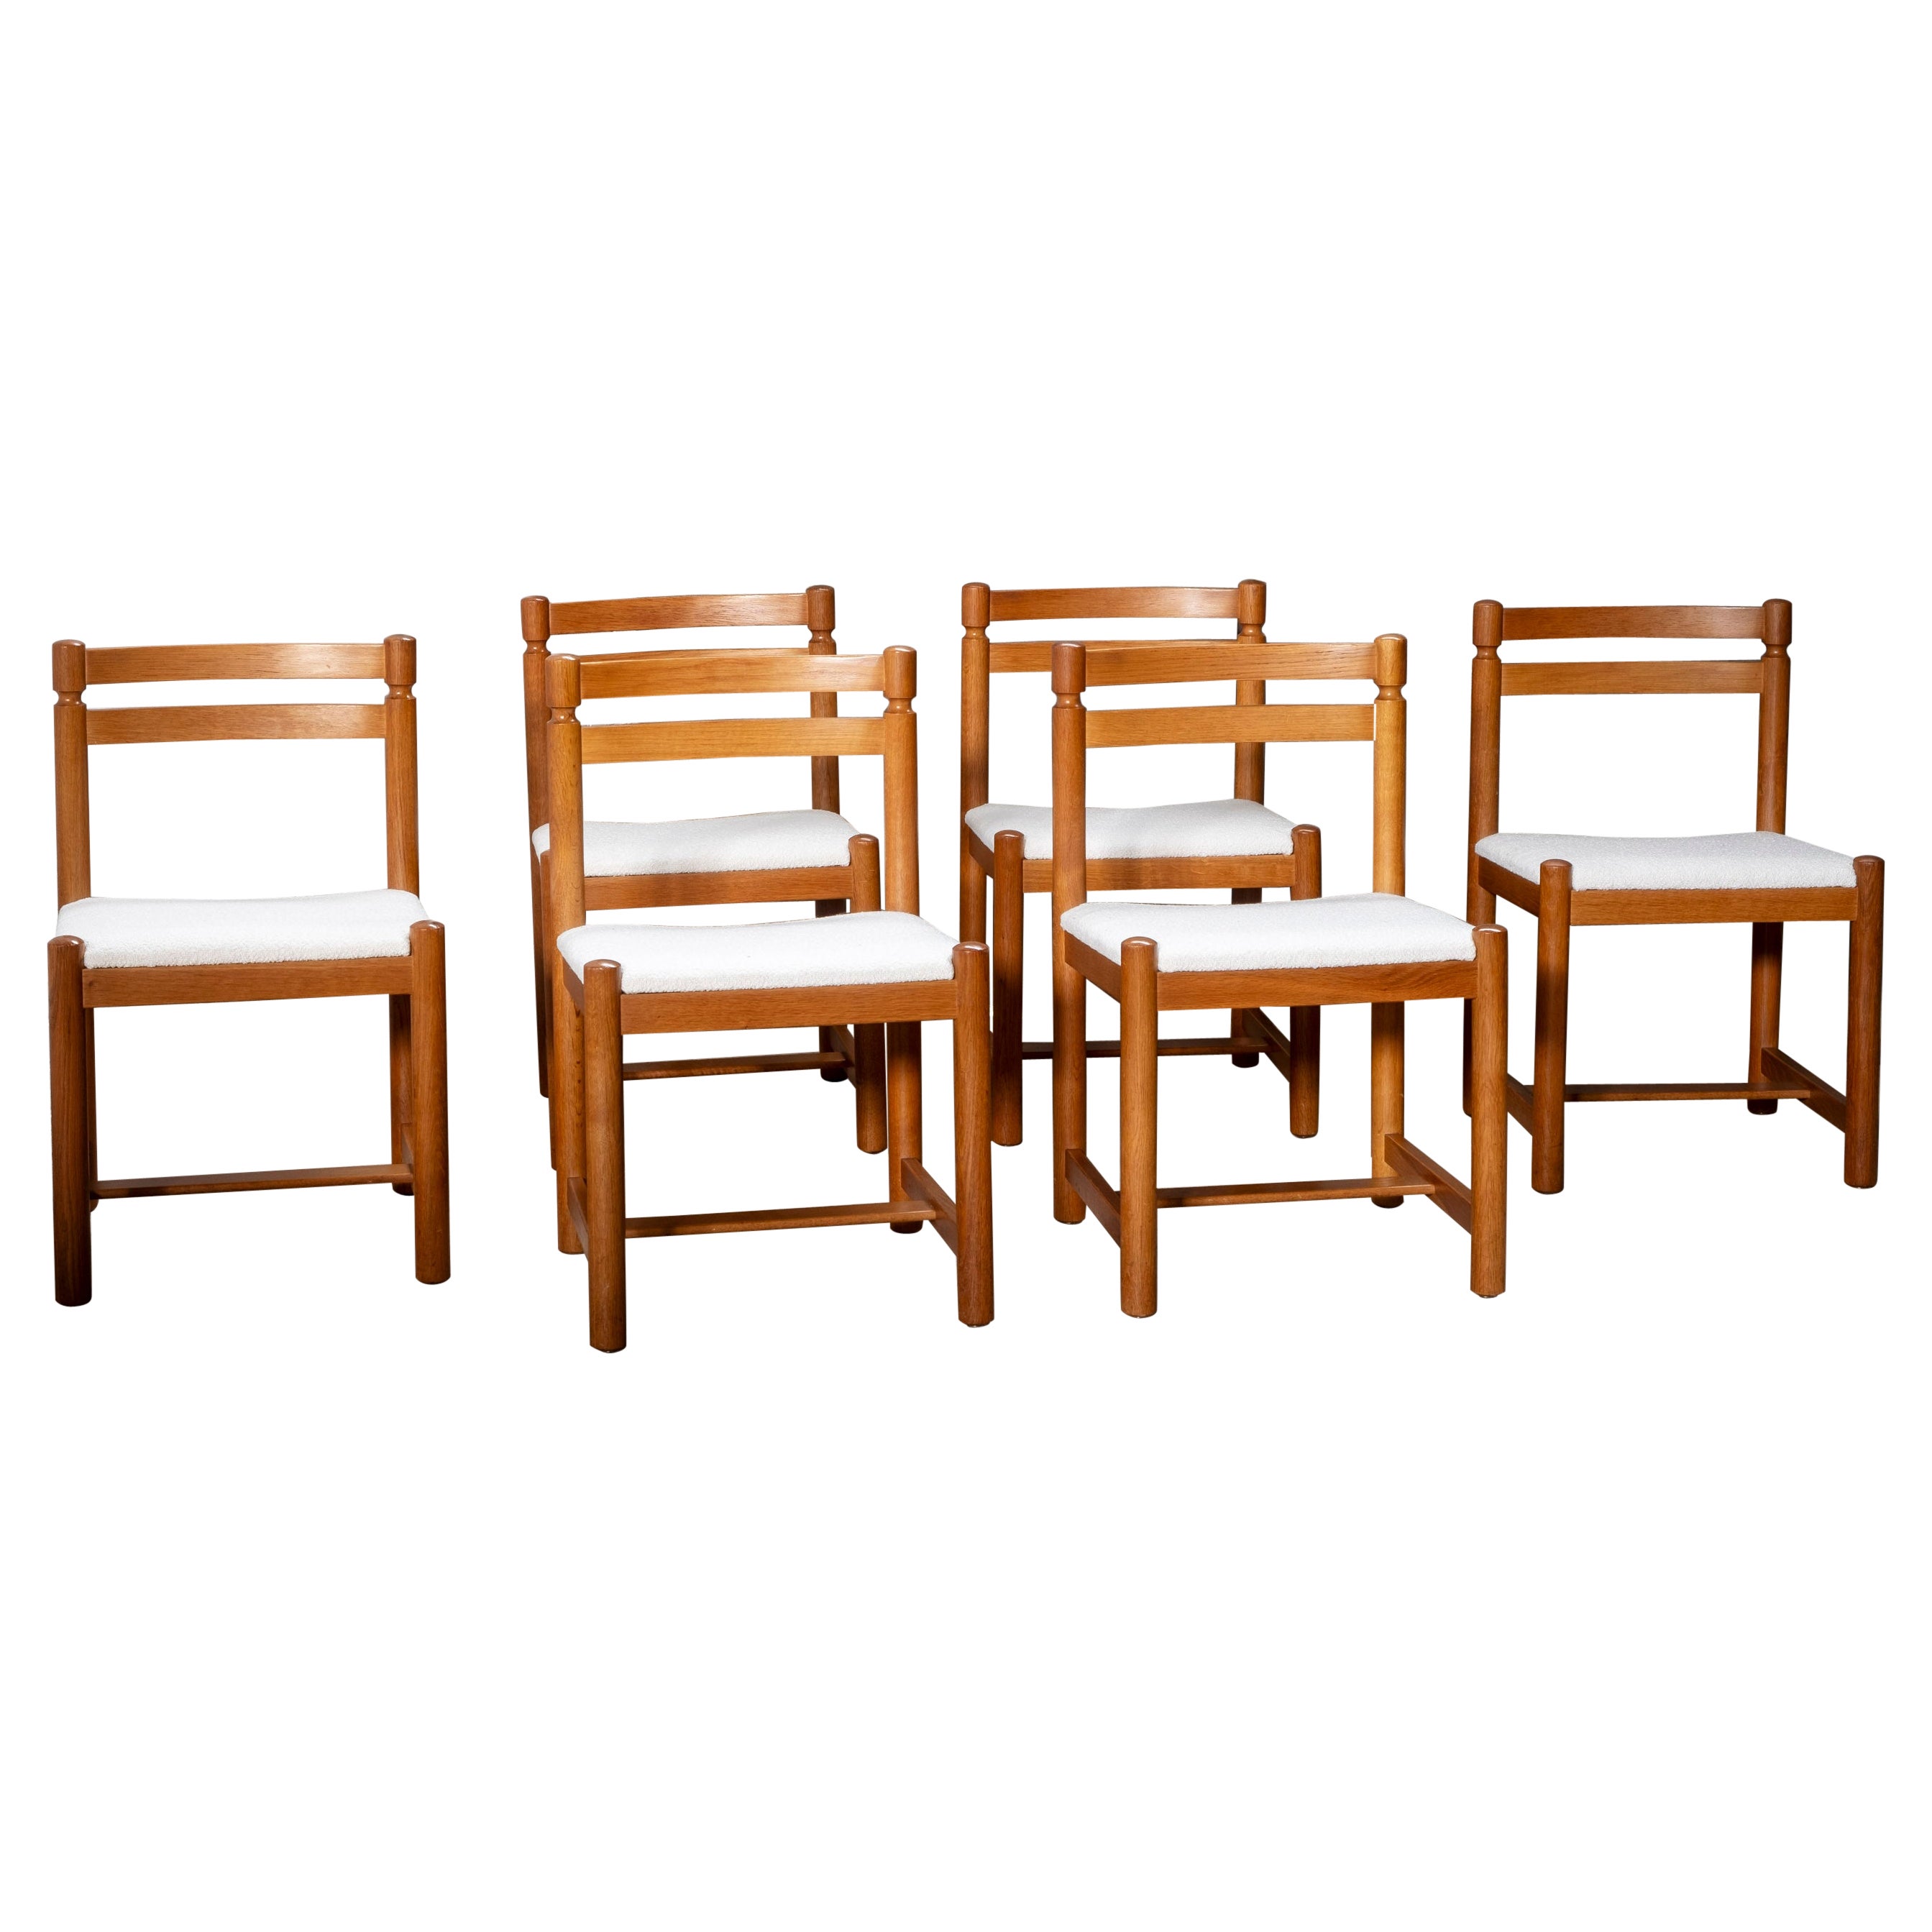 Satz von 6 brutalistischen Stühlen aus Eiche mit wunderschöner Holzmaserung, hergestellt in den 1960er Jahren.
Die Sitze wurden mit einem schönen weißen Bouclé-Stoff neu bezogen.

Diese Stühle sind vielseitig einsetzbar und fügen sich nahtlos in den